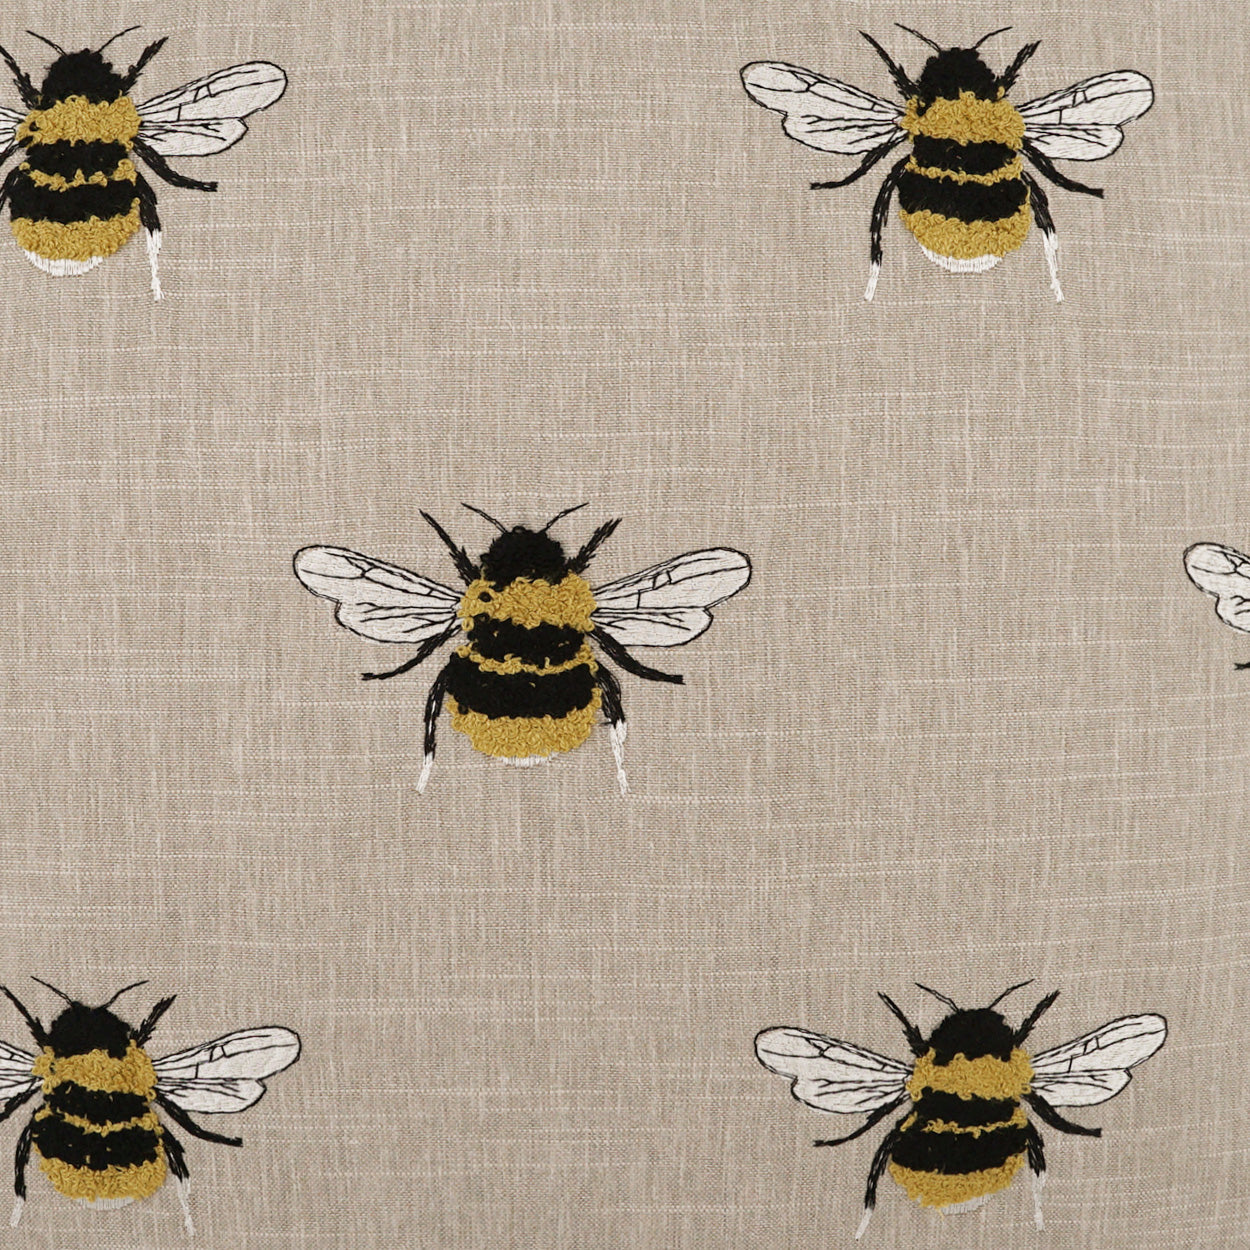 Busy Bee Pillow - Linen